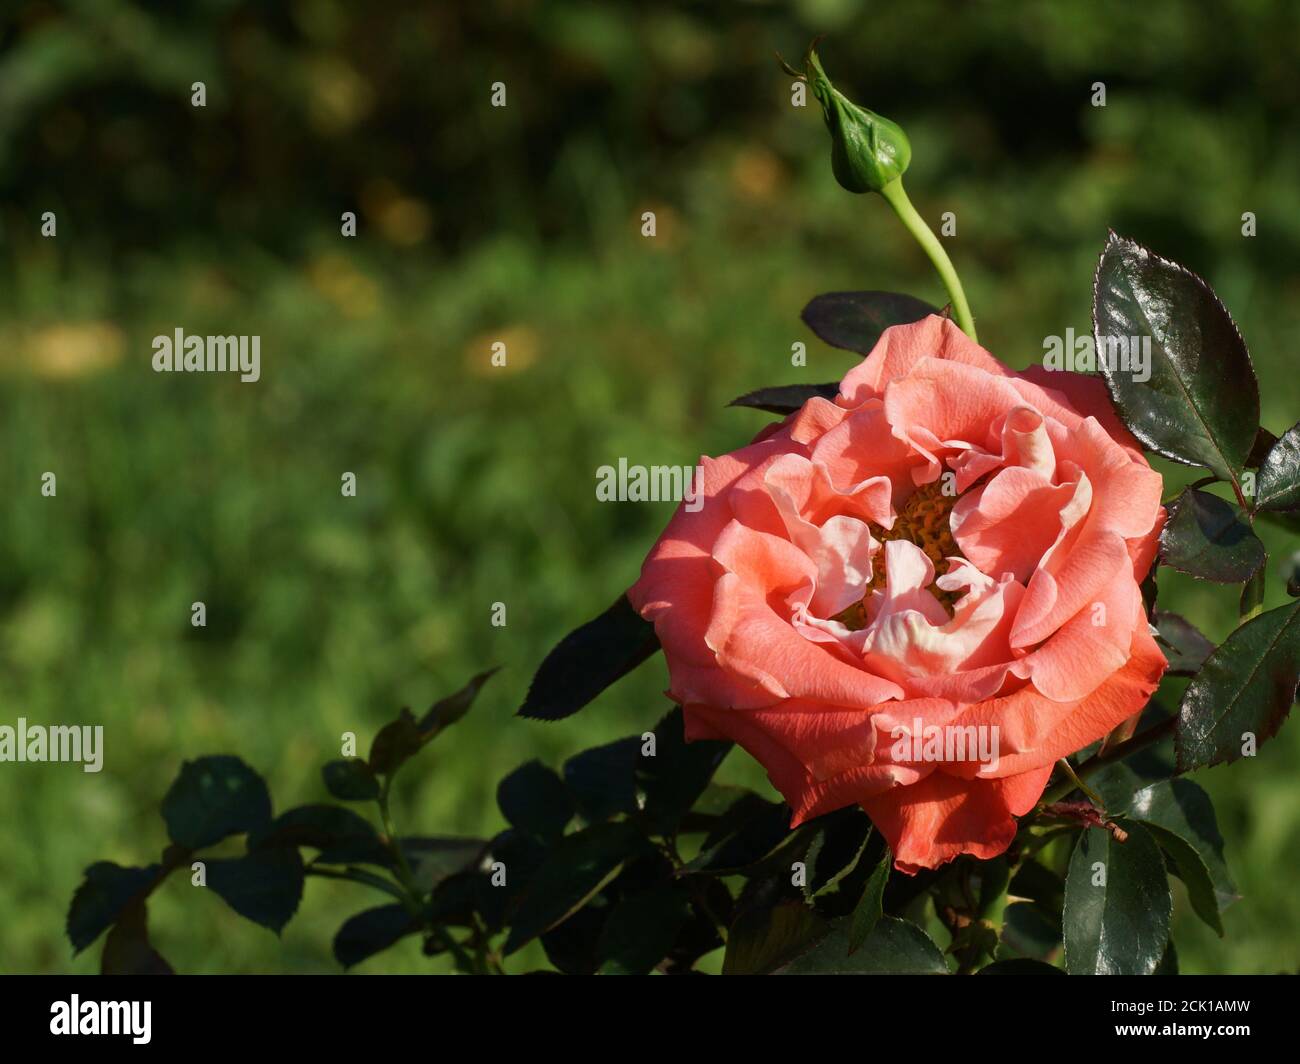 Rosa Candy Ruffles magnifique corail rose gros plan. Une fleur, dans un jardin dans des conditions naturelles au milieu de la verdure, sous le ciel ouvert. Banque D'Images